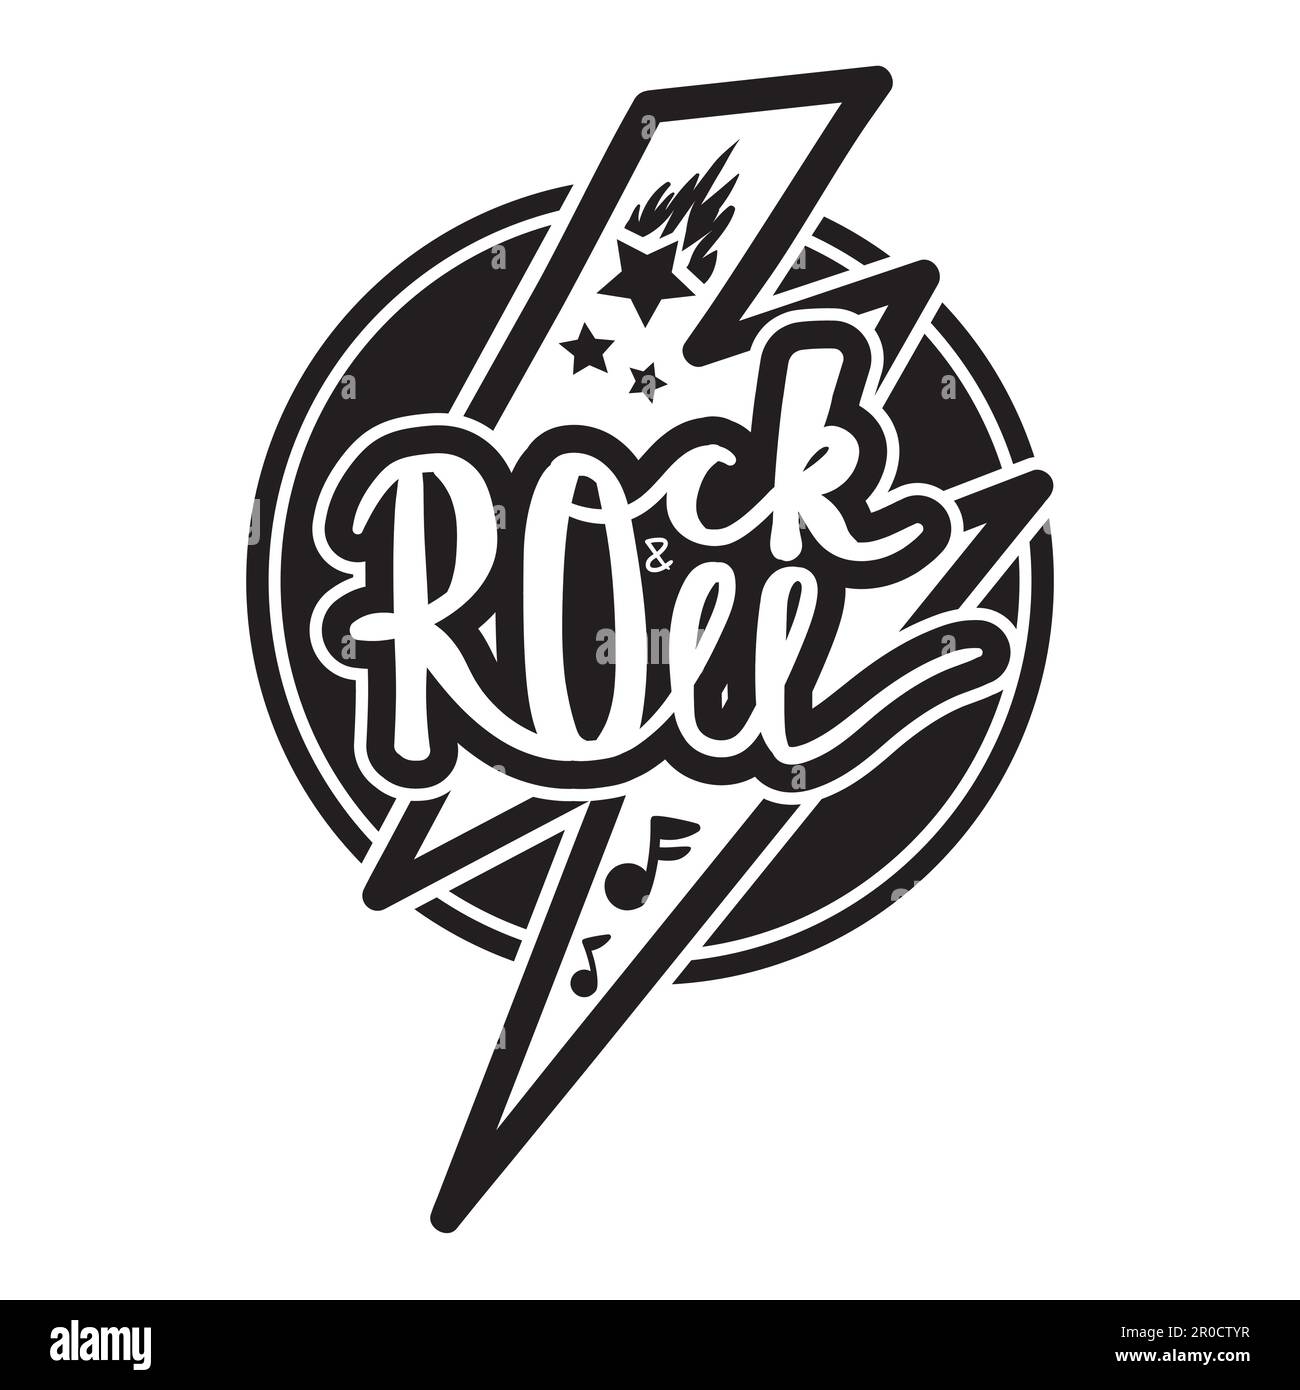 Rock-and-Roll-Schriftzug für T-Shirt, Aufkleber, Aufdruck, Stoff, Stoff.  Handgezeichnetes klassisches Musikabzeichen in Schwarzweiß.  Retro-Hipster-Sound-Emblem für Karte, CO Stock-Vektorgrafik - Alamy